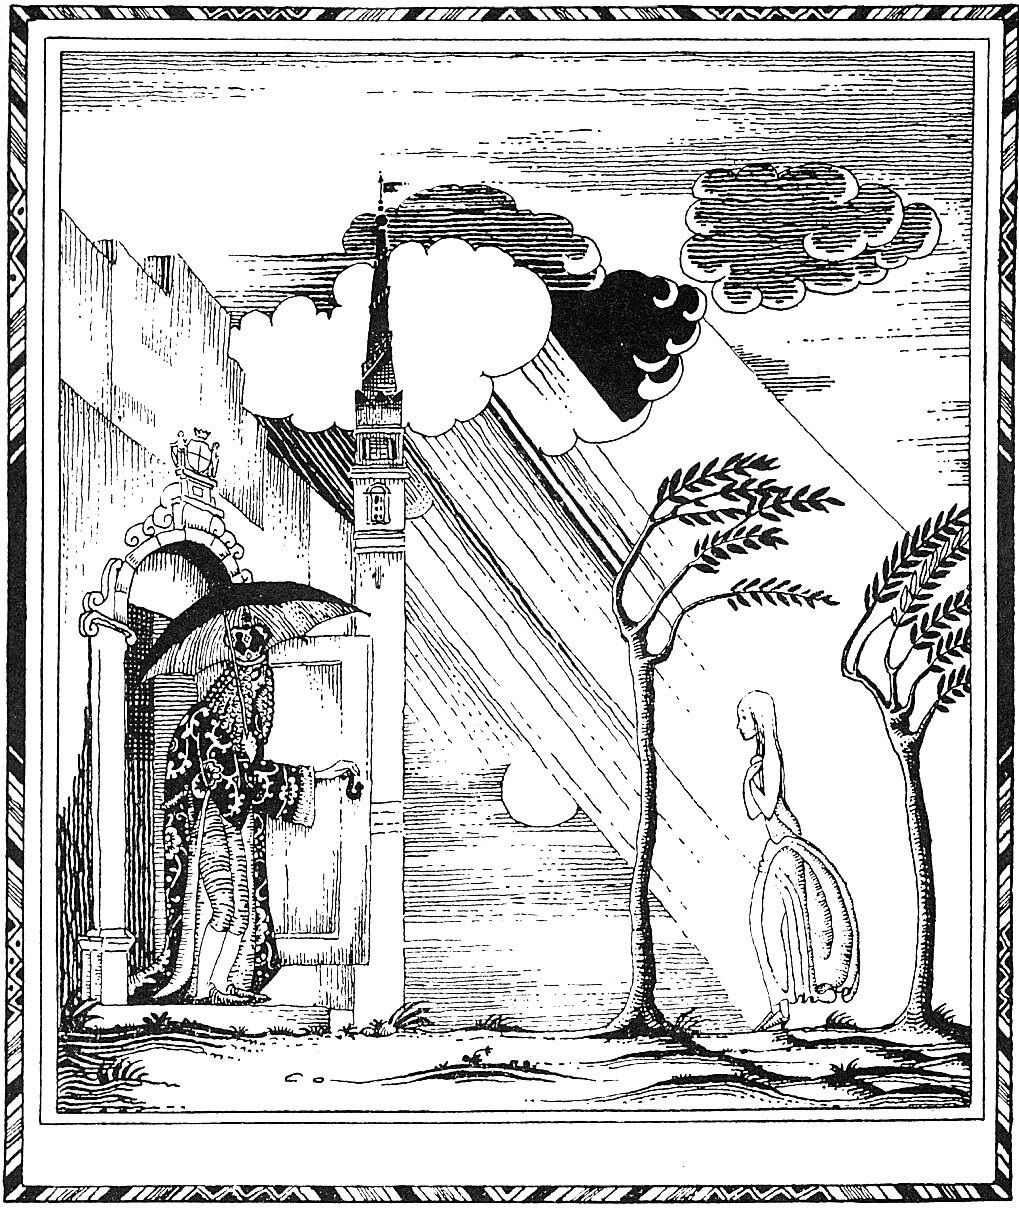 Иллюстрации Кея Нильсена к сказке «Принцесса на горошине»